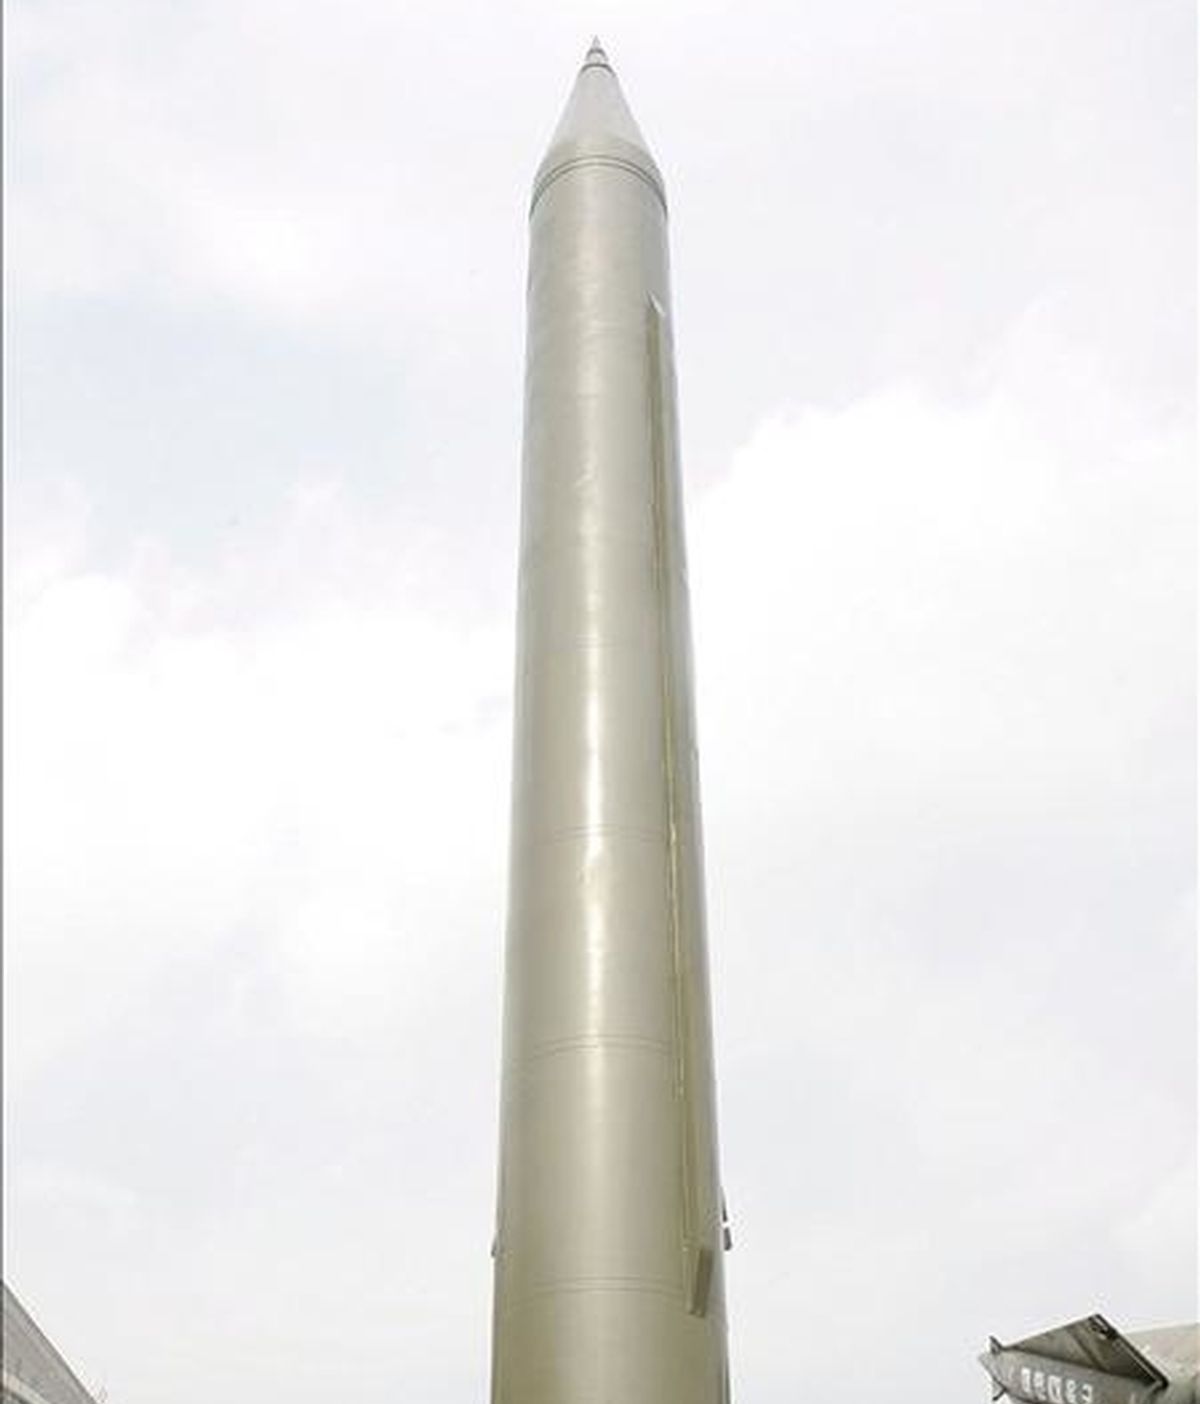 Imagen de un modelo del misil norcoreano Scud-B exhibido en el Museo de la Guerra entre Coreas en Seúl, Corea del Sur. EFE/Archivo